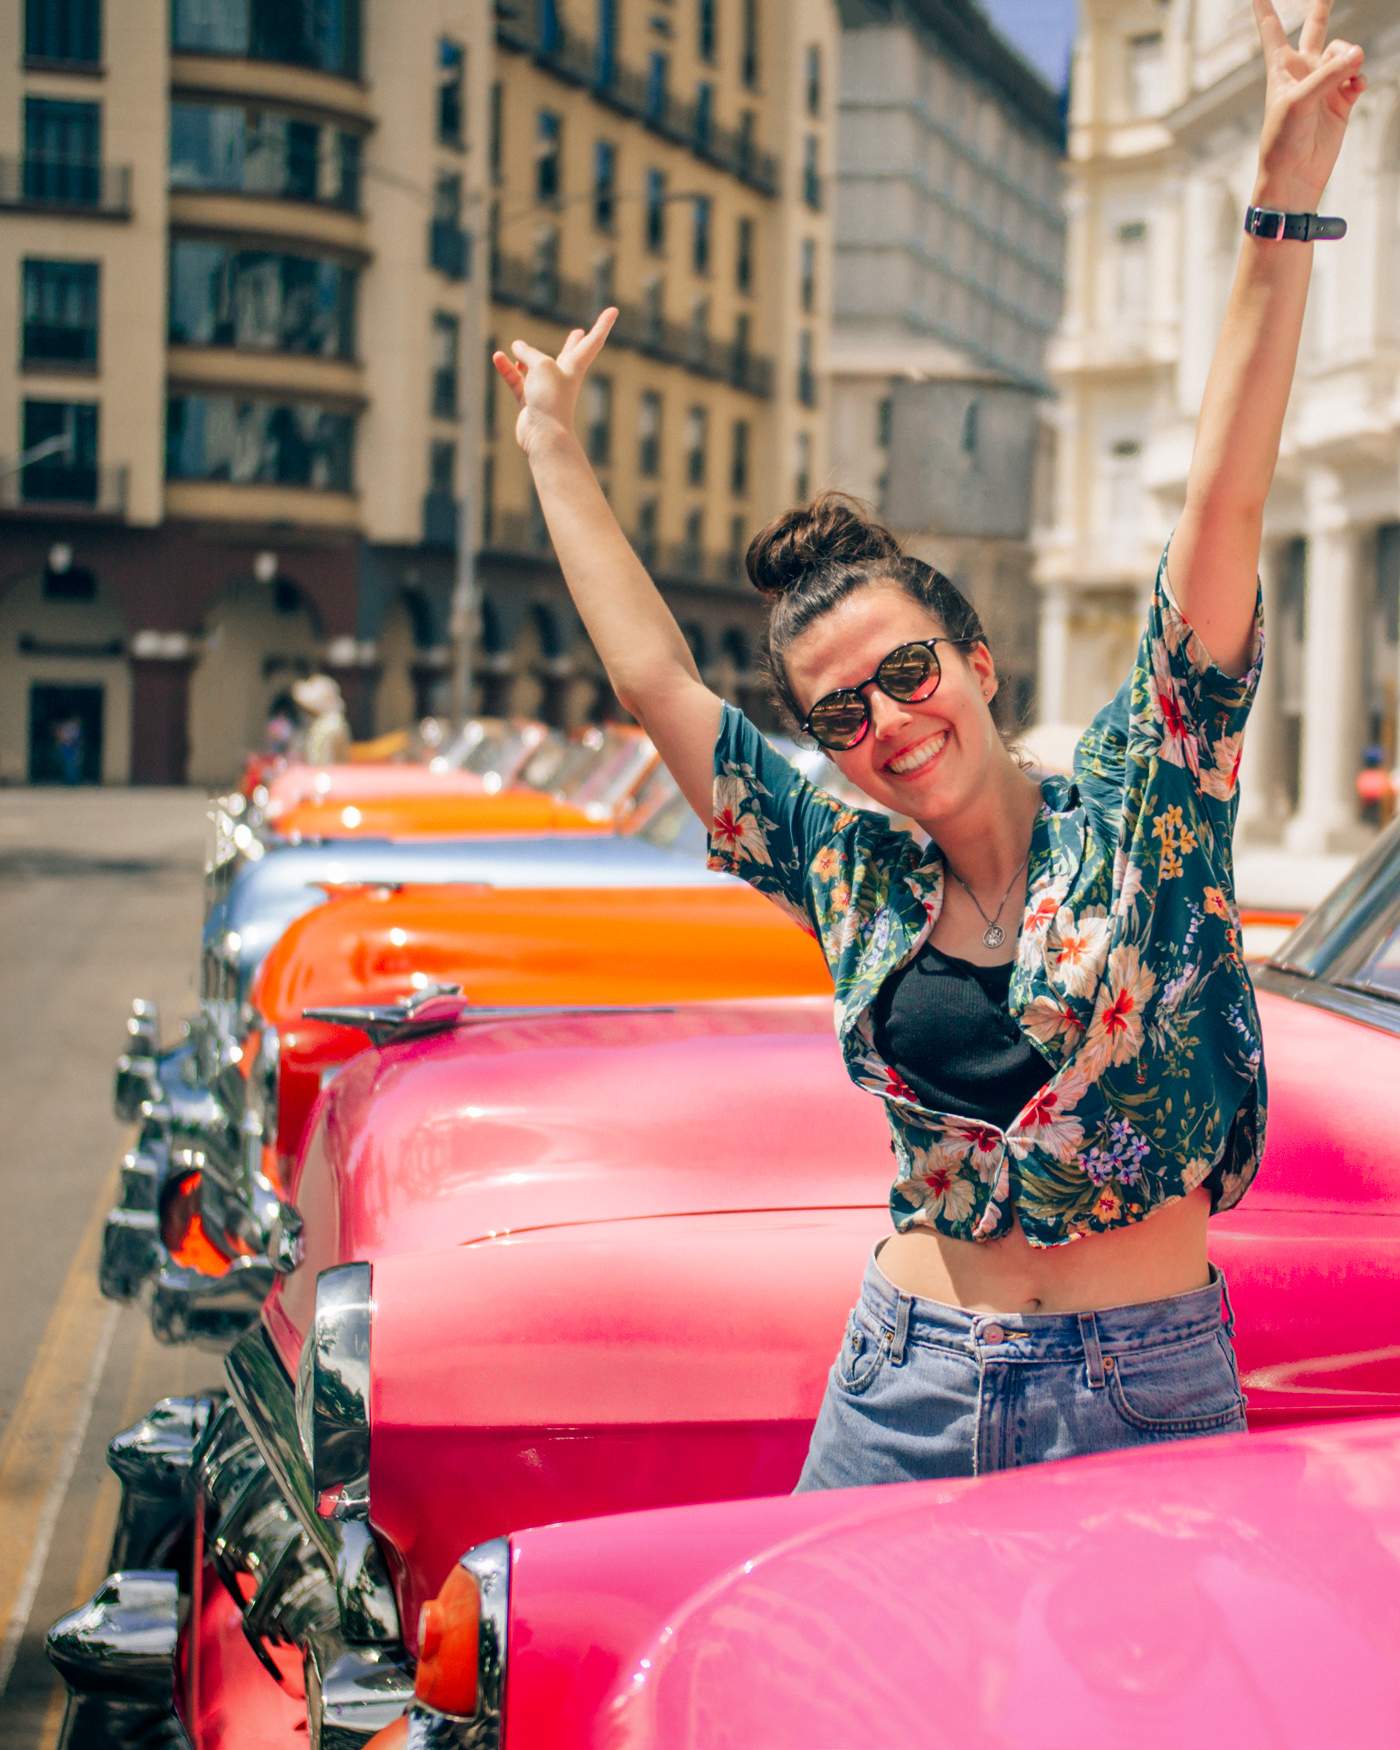 Katie standing between old American cars in Havana